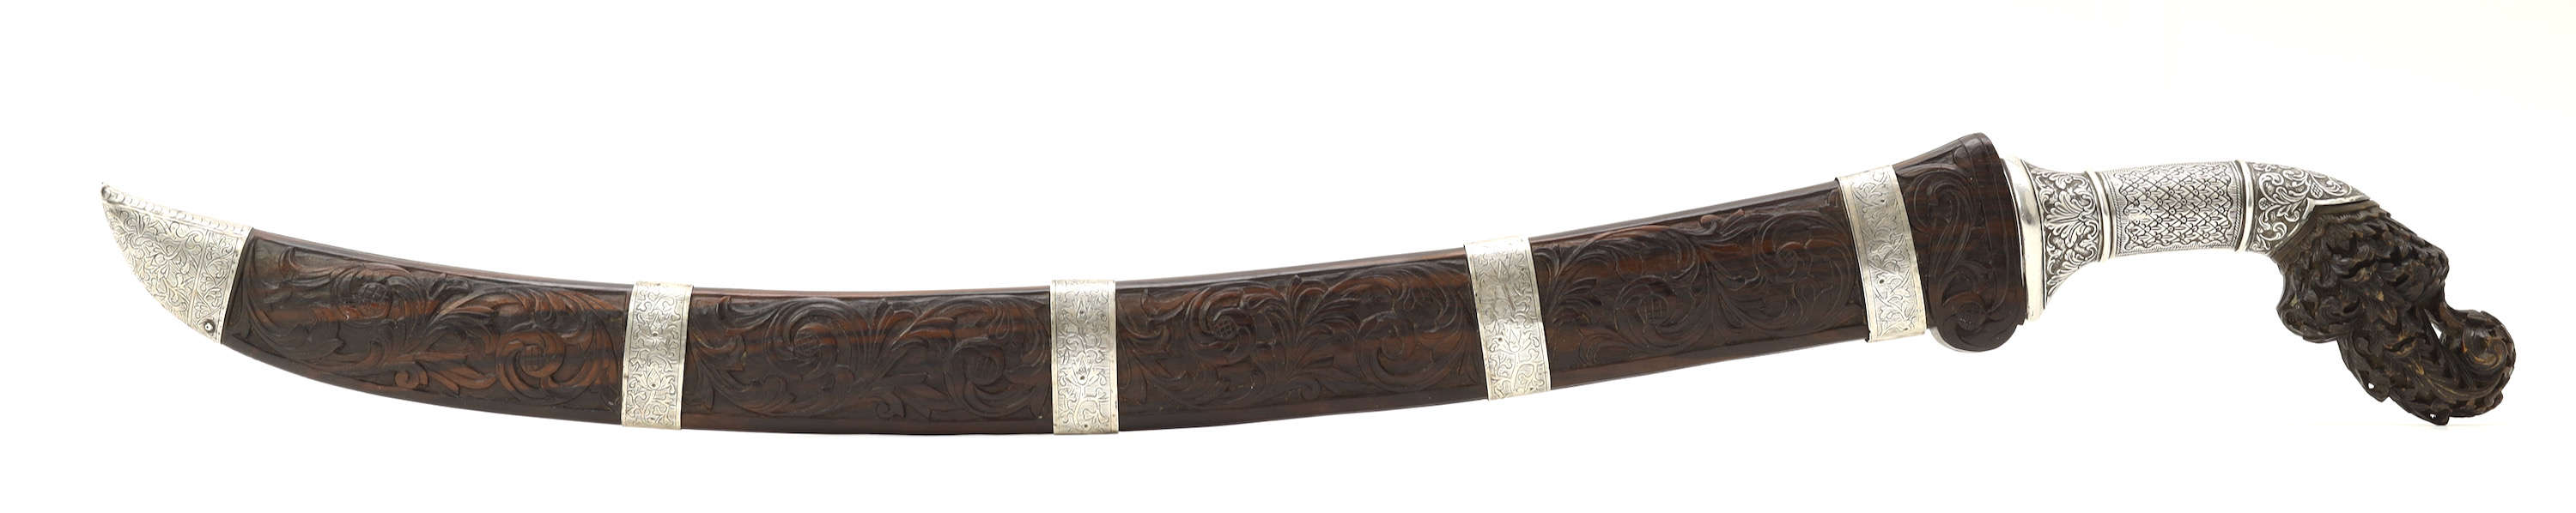 Palembang pedang benkok with twistcore blade